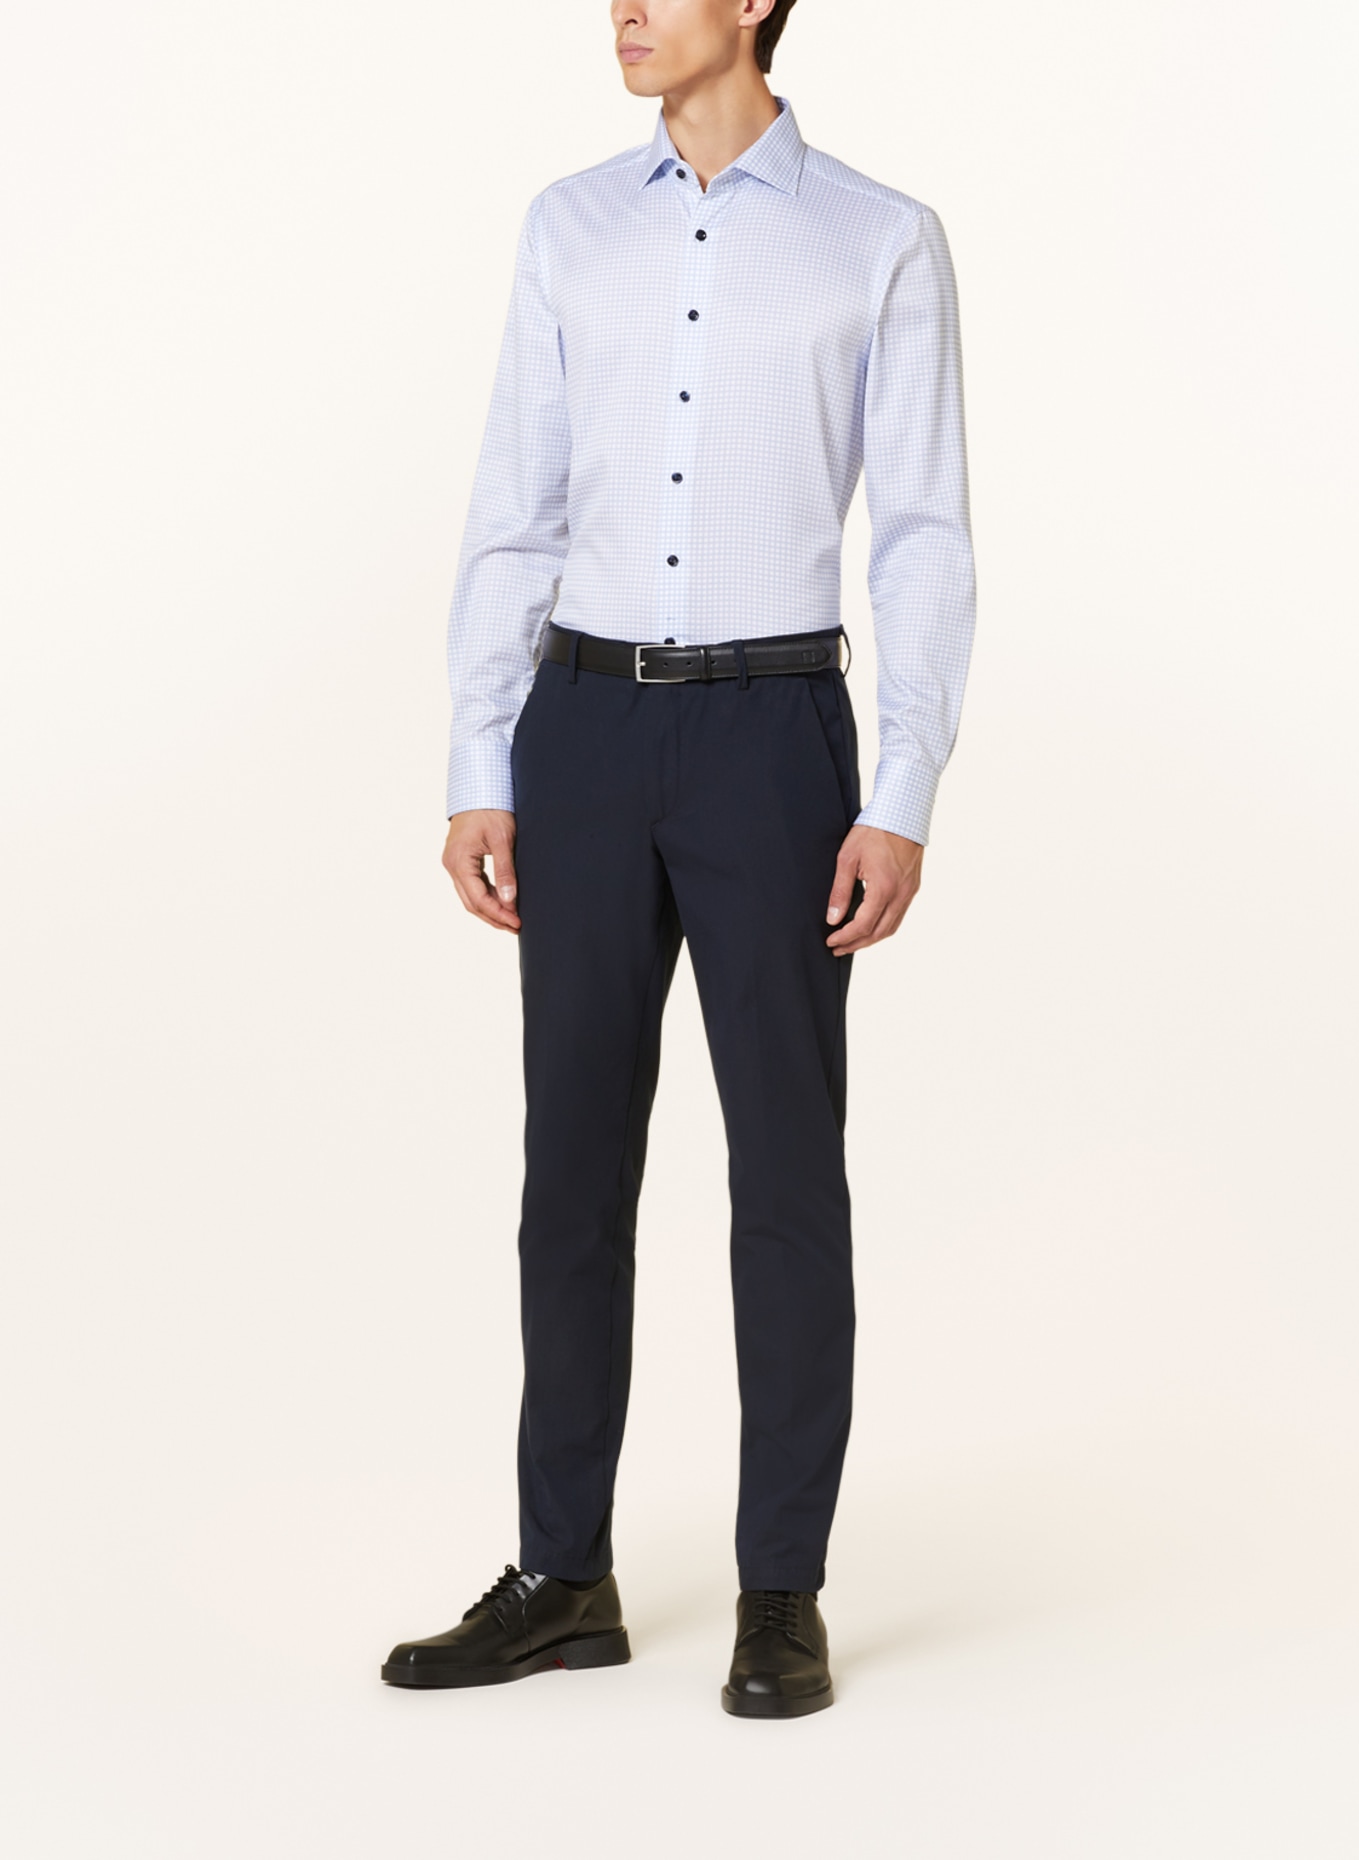 OLYMP SIGNATURE Hemd slim fit in weiss/ hellblau | Breite Krawatten